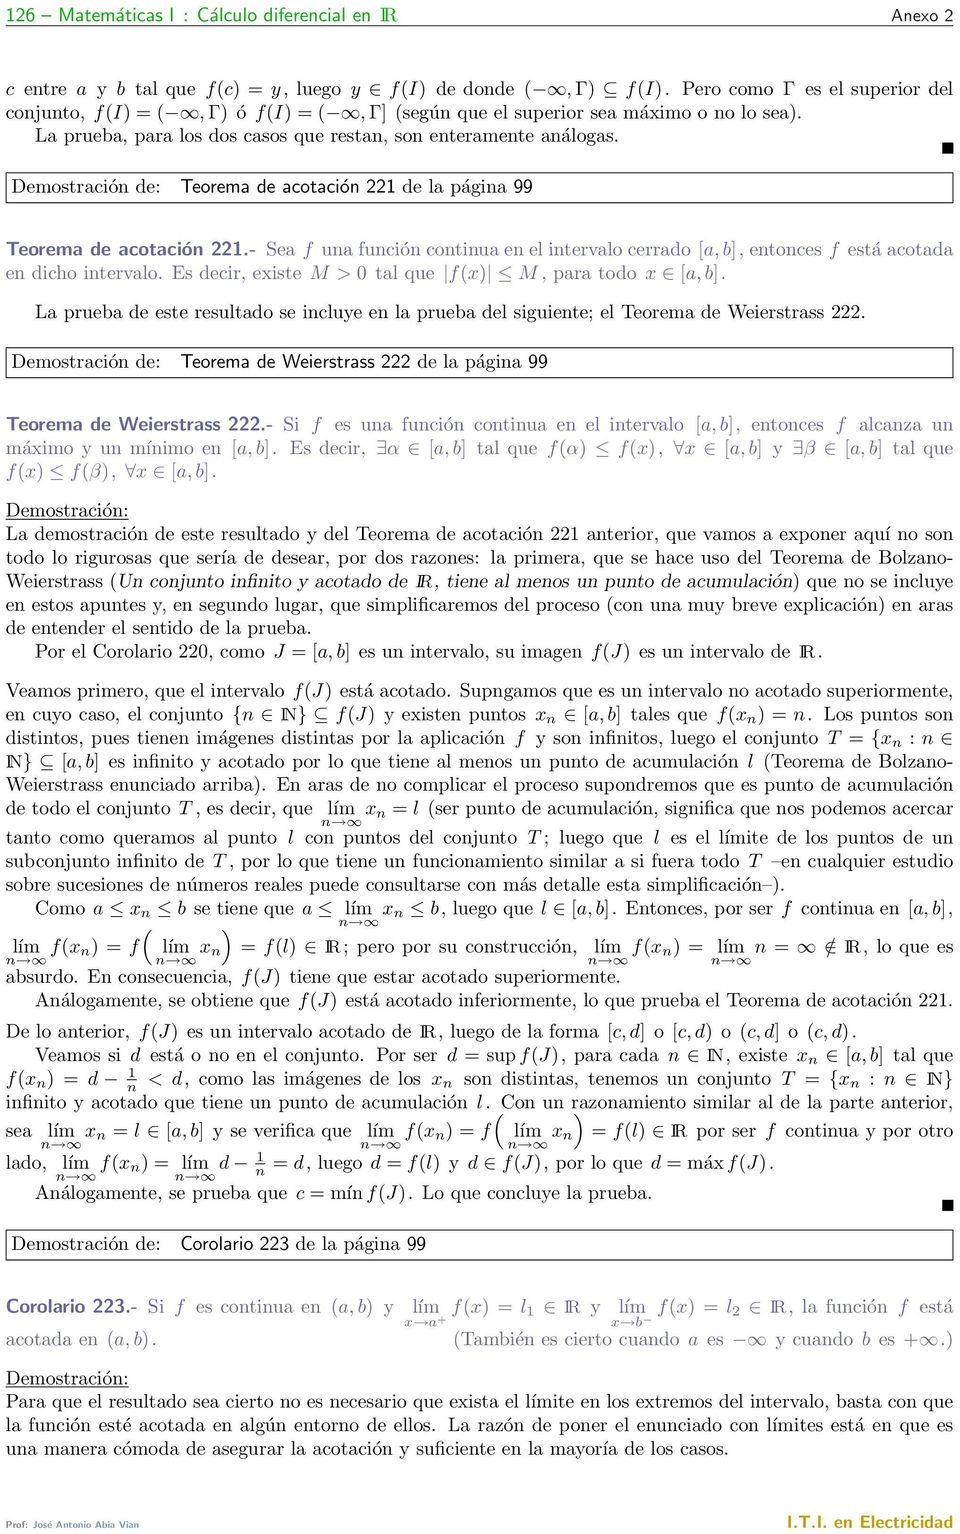 Demostración de: Teorema de acotación de la página 99 Teorema de acotación.- Sea f una función continua en el intervalo cerrado [a, b], entonces f está acotada en dicho intervalo.